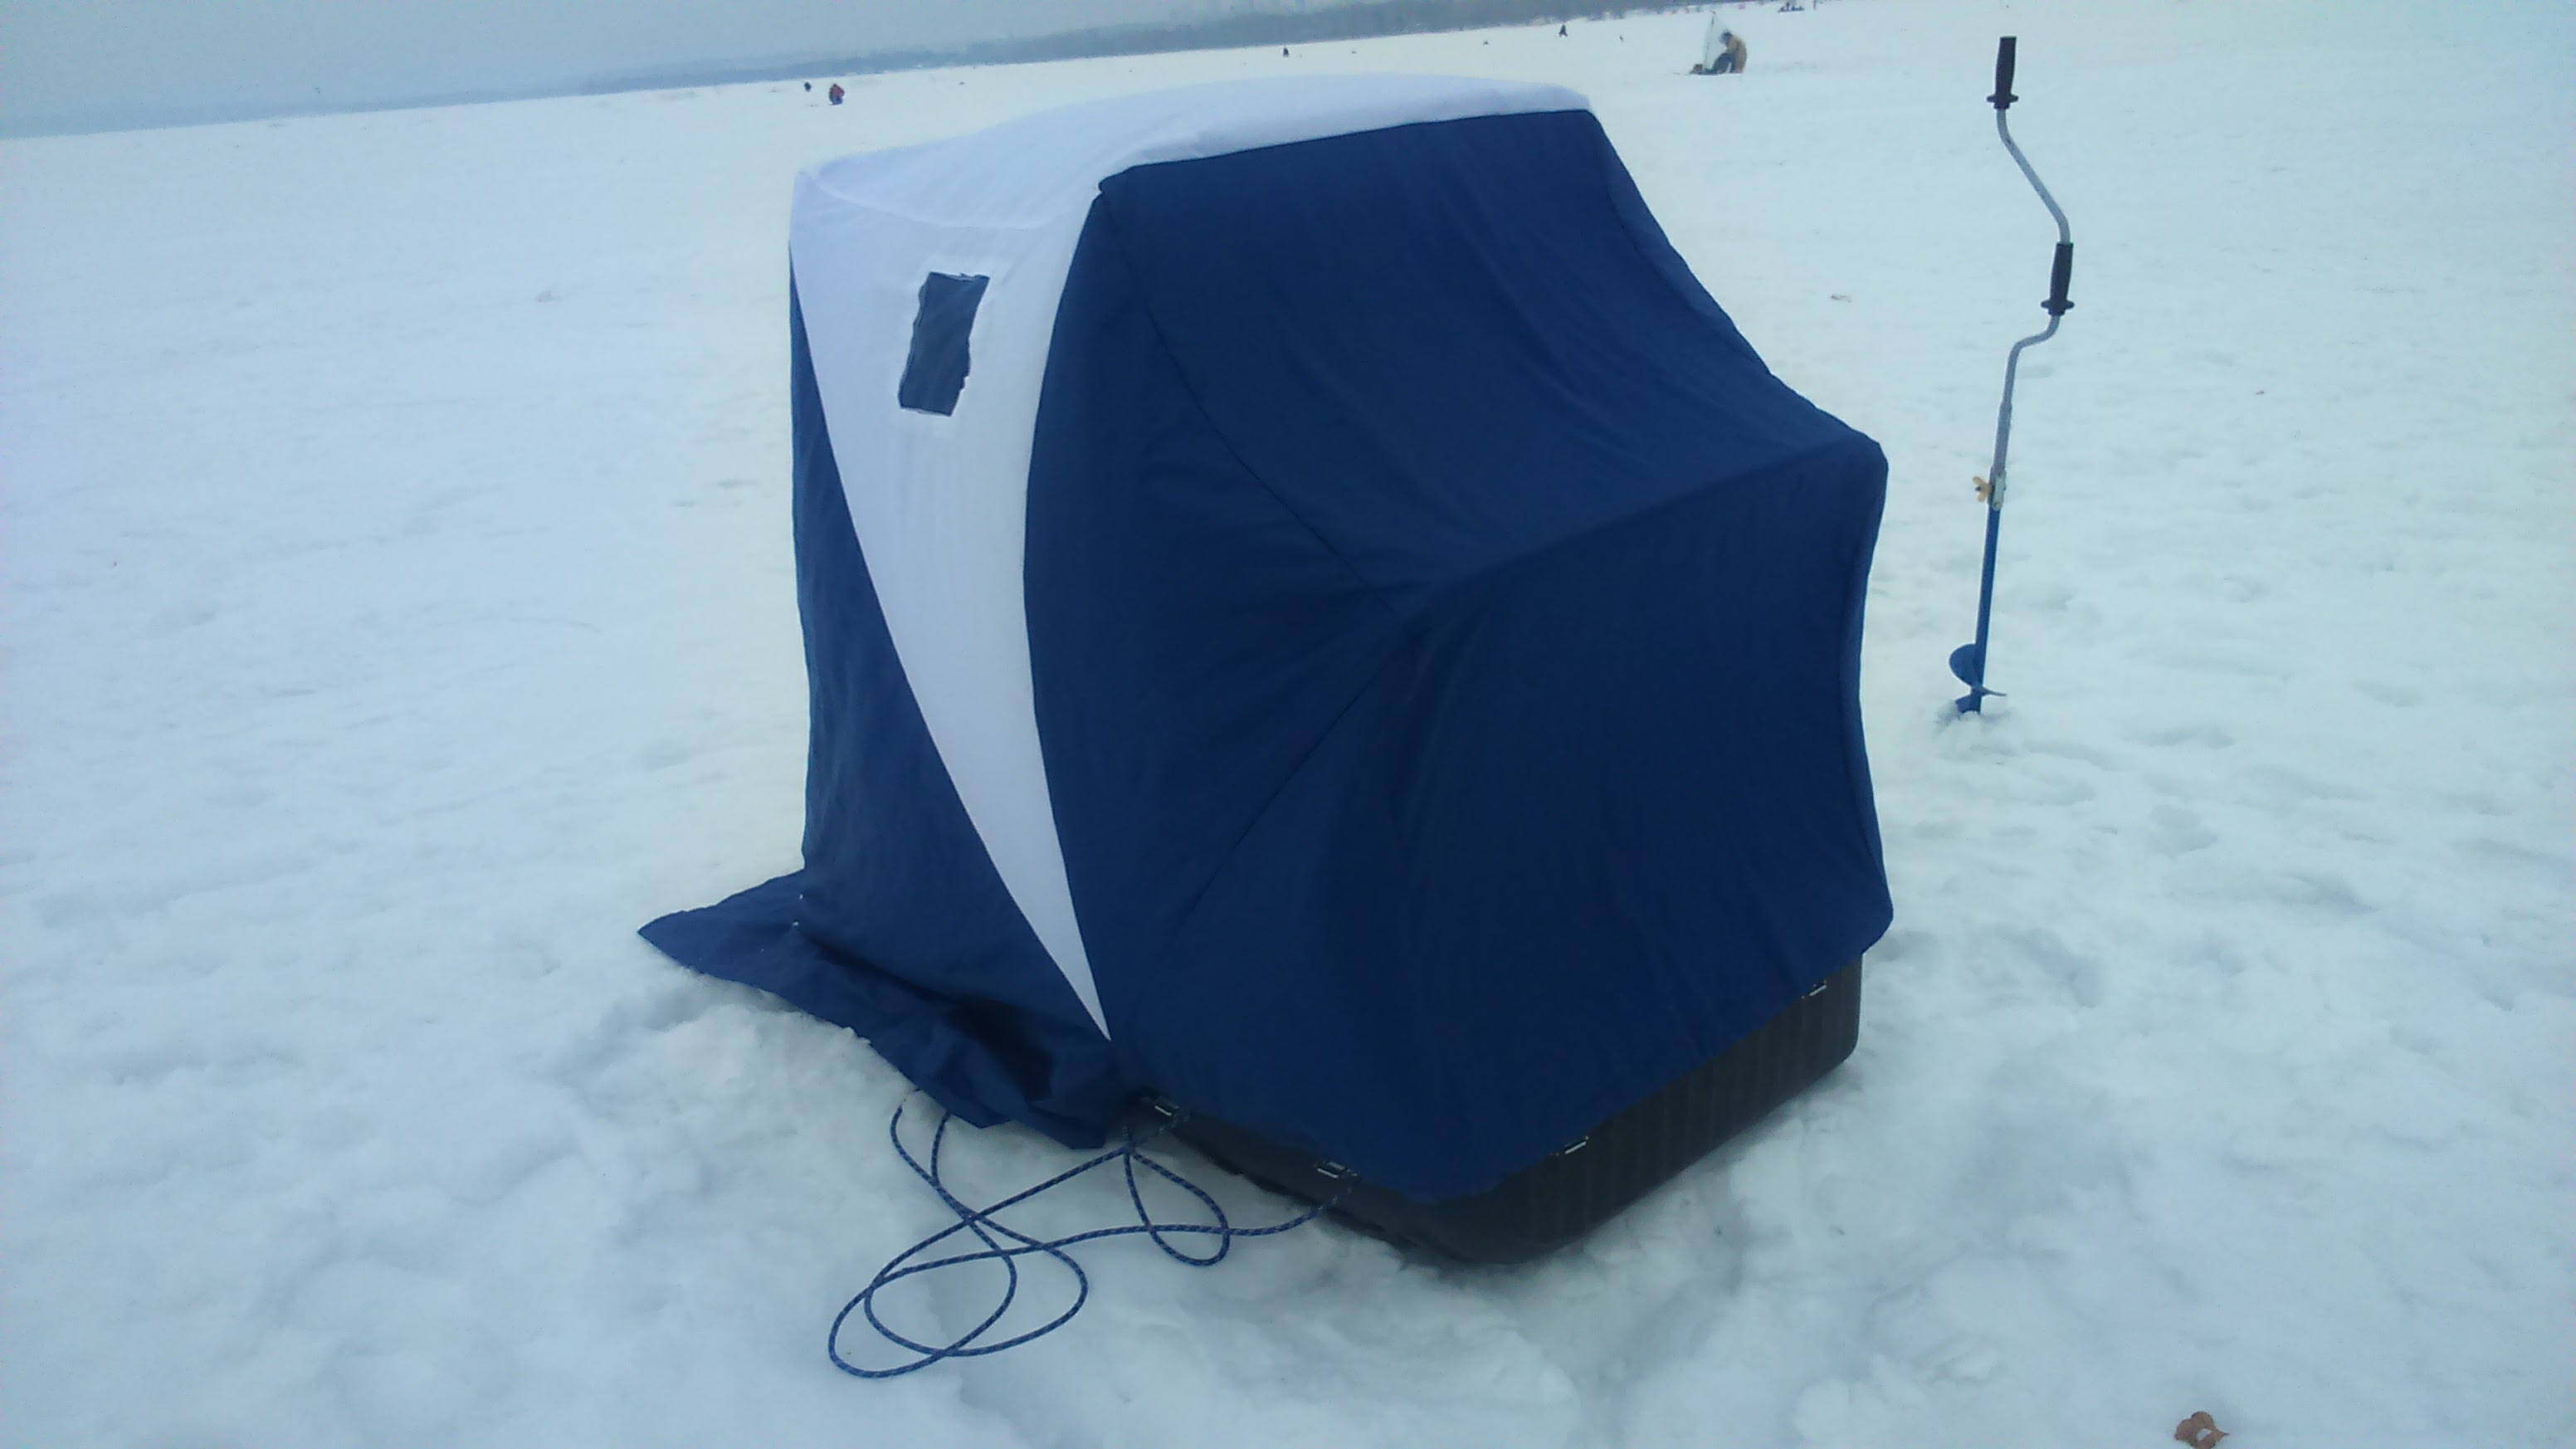 Сани палатка. Палатка зимней рыбалки mobile Tent. Зимняя палатка сани циклон. Сани- палатка рыбацкие "Ангара". Сани СВП 150 С палаткой.